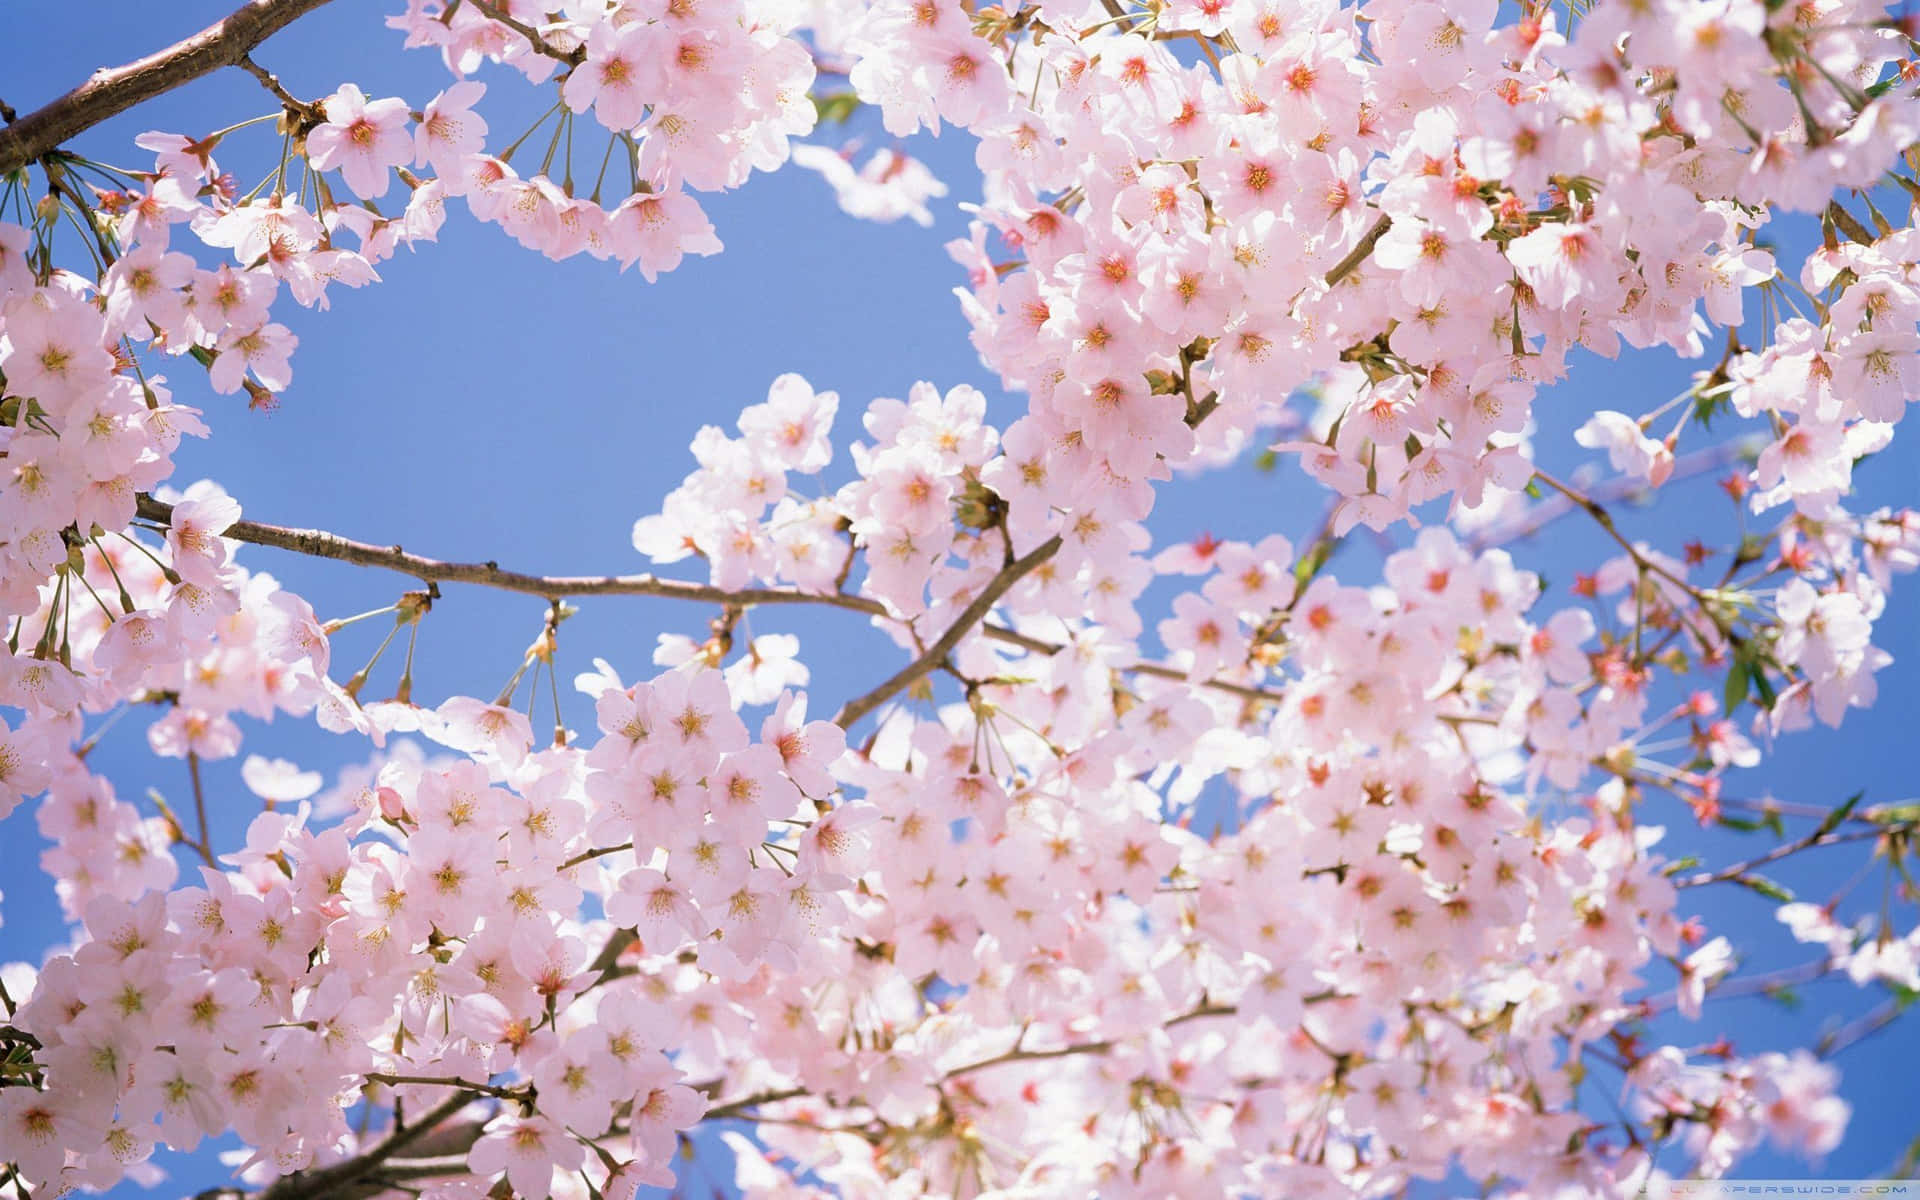 Surcalos Cielos Sobre Los Cerezos En Flor En Este Hermoso Paisaje De Anime. Fondo de pantalla